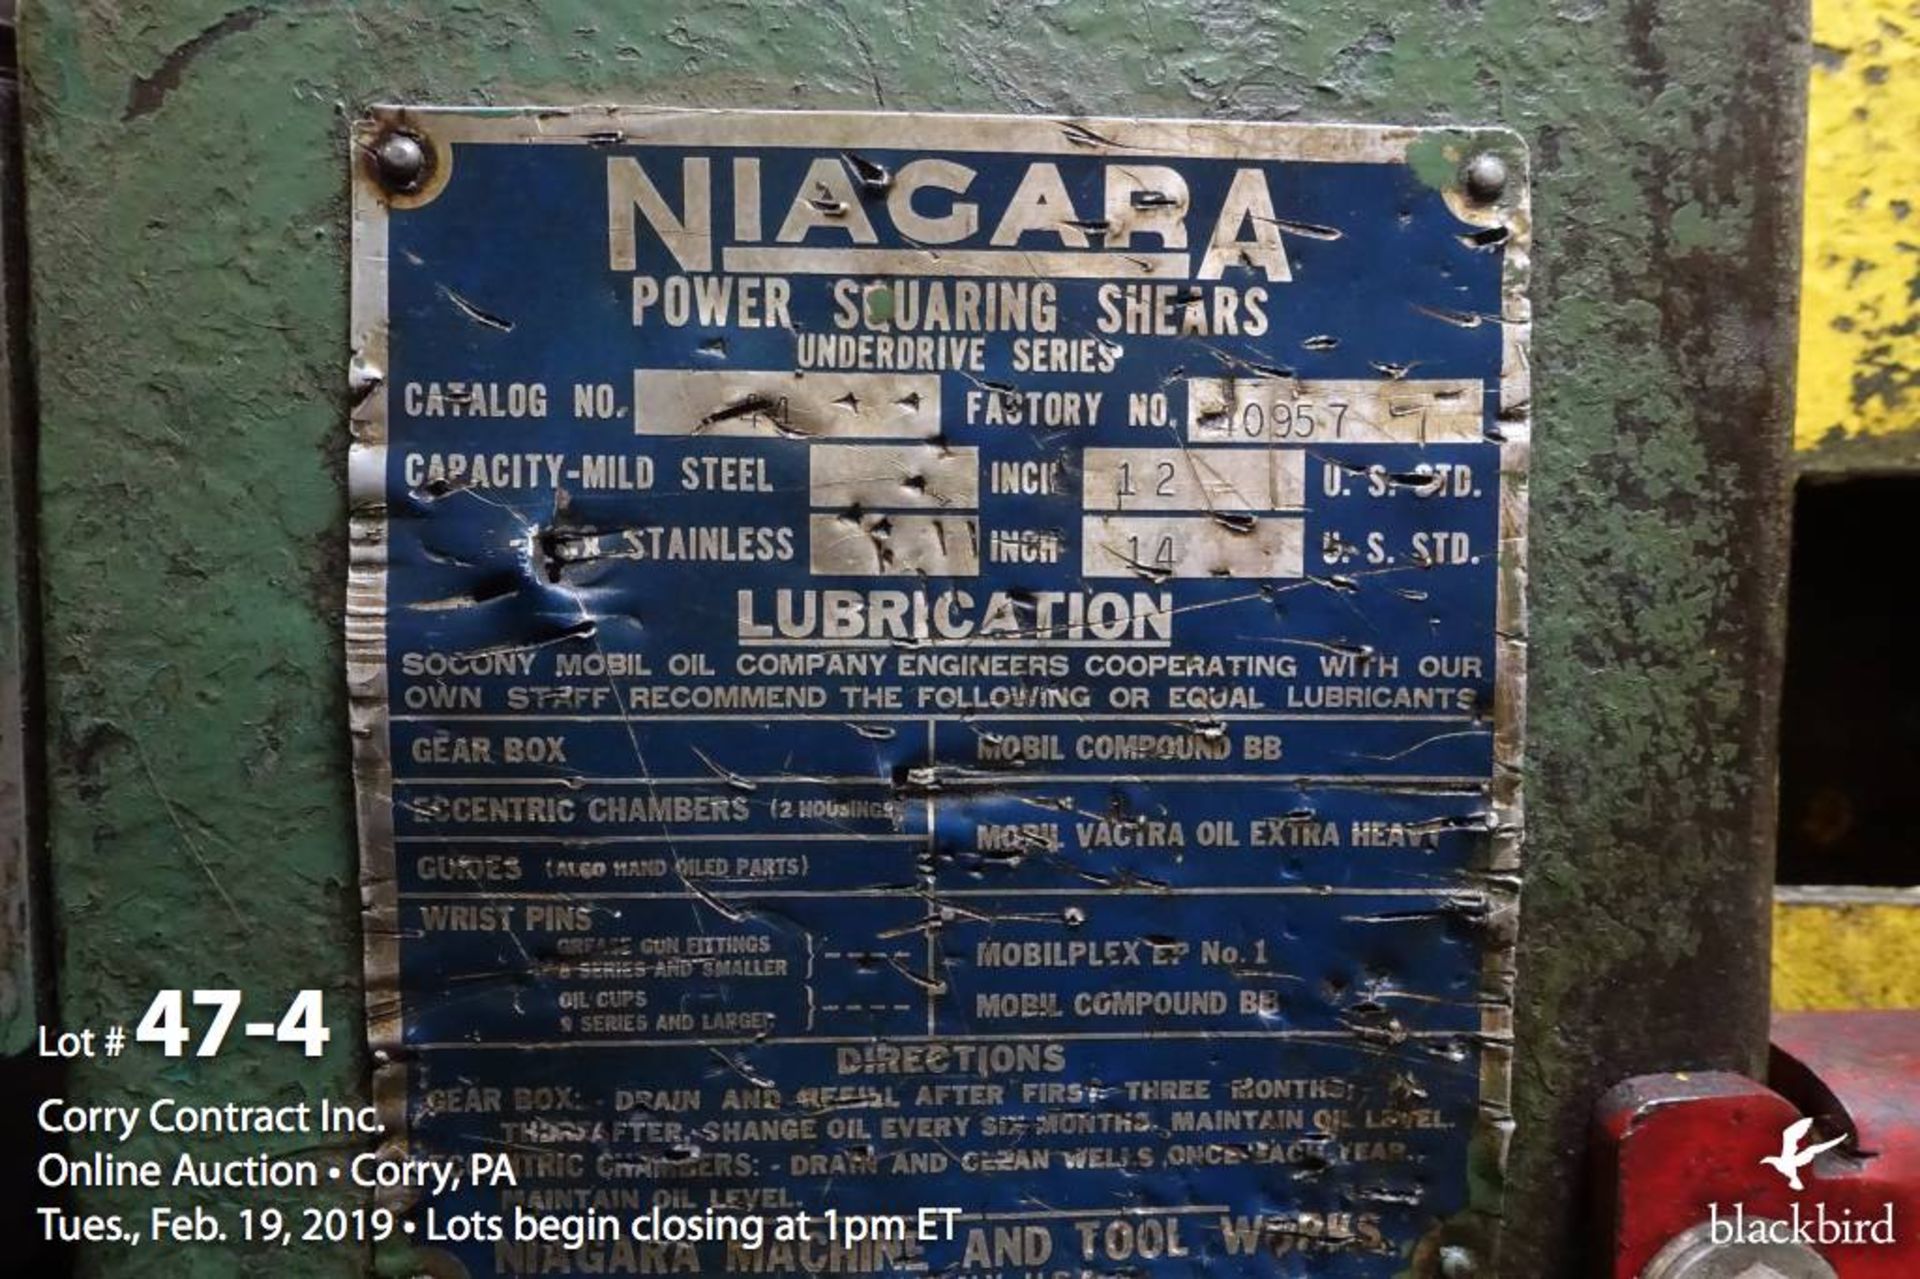 Niagara #44 48" mechanical shear model 4 - Image 4 of 4